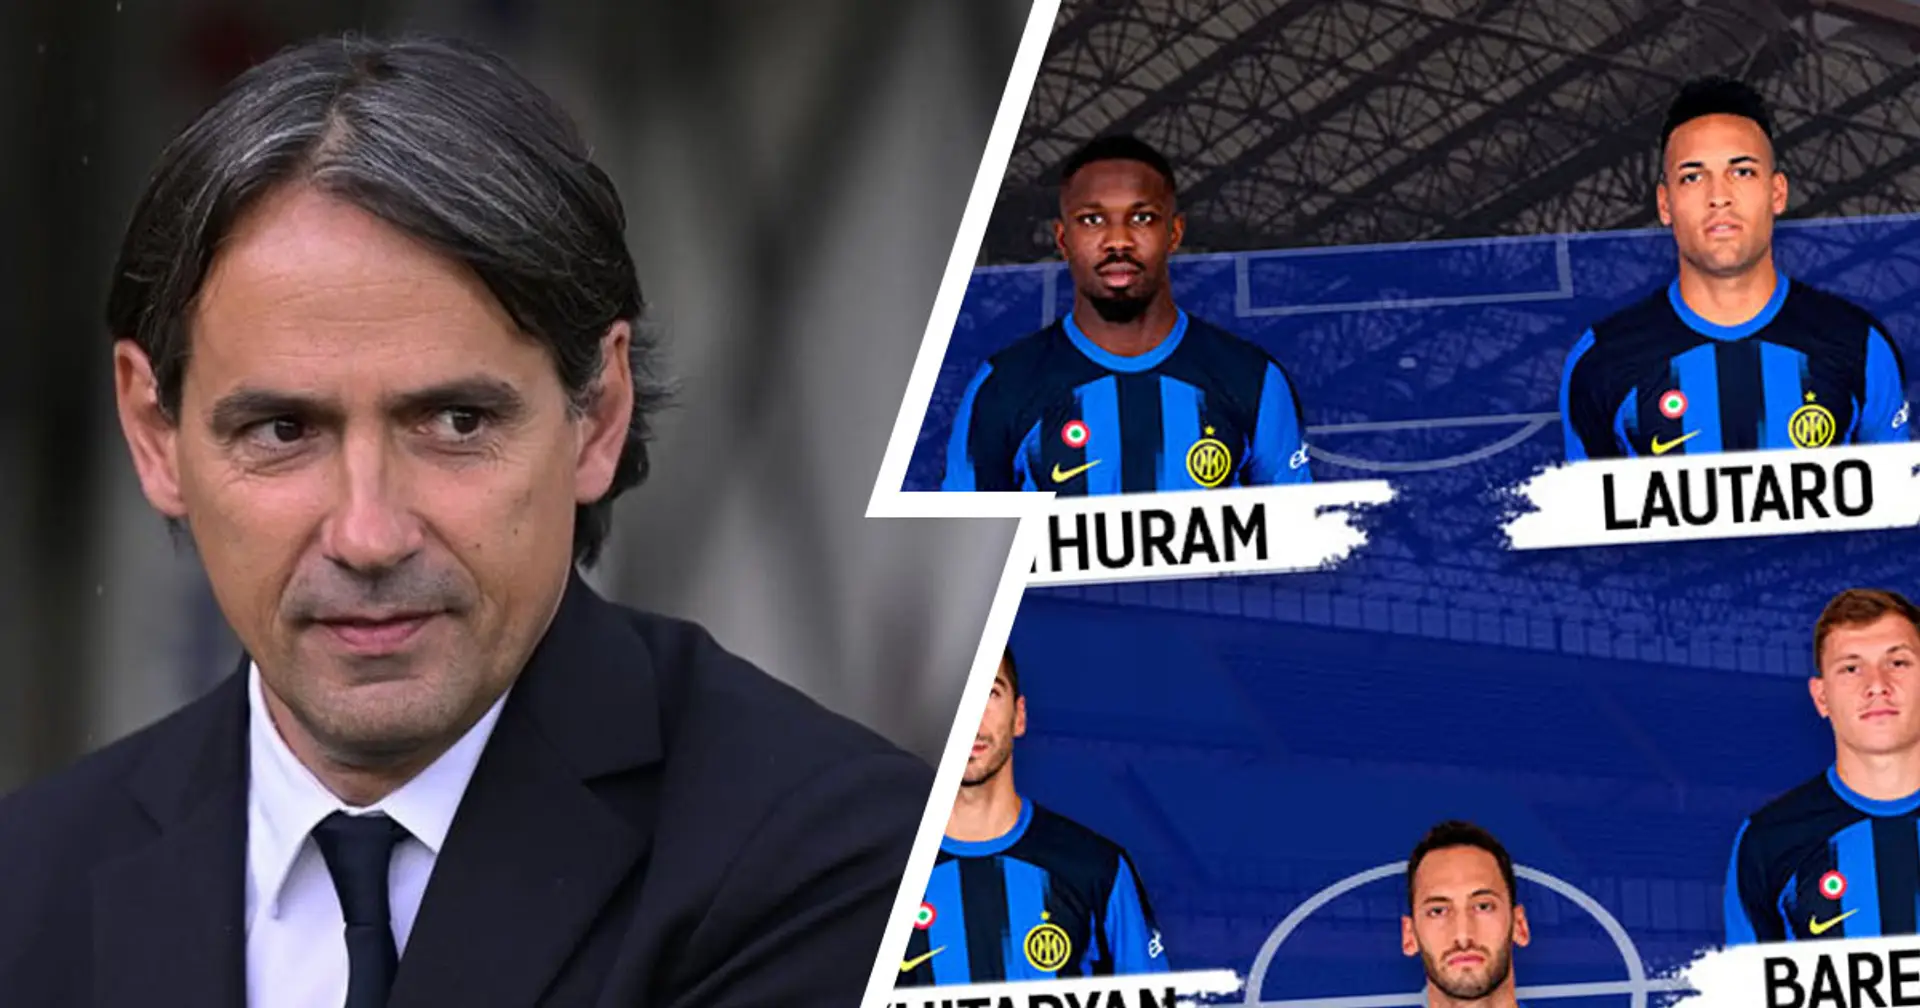 Il rientro di Lautaro e Pavard, un dubbio da sciogliere: Milan vs Inter, probabili formazioni e ultime notizie